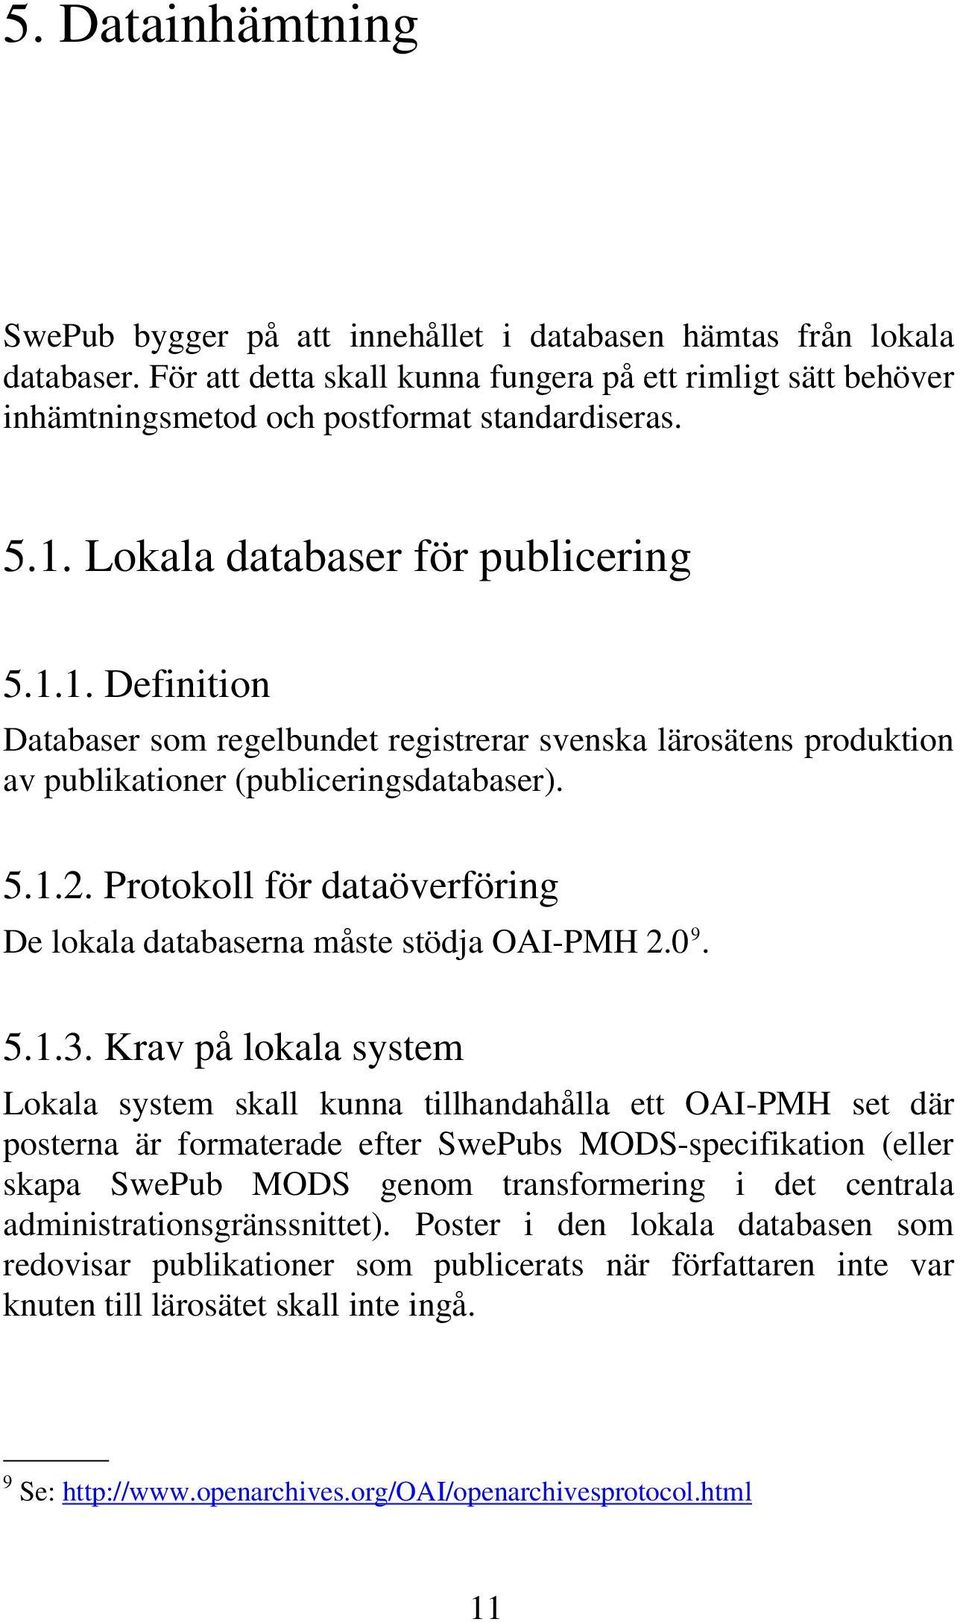 Lokala databaser för publicering 5.1.1. Definition Databaser som regelbundet registrerar svenska lärosätens produktion av publikationer (publiceringsdatabaser). 5.1.2.